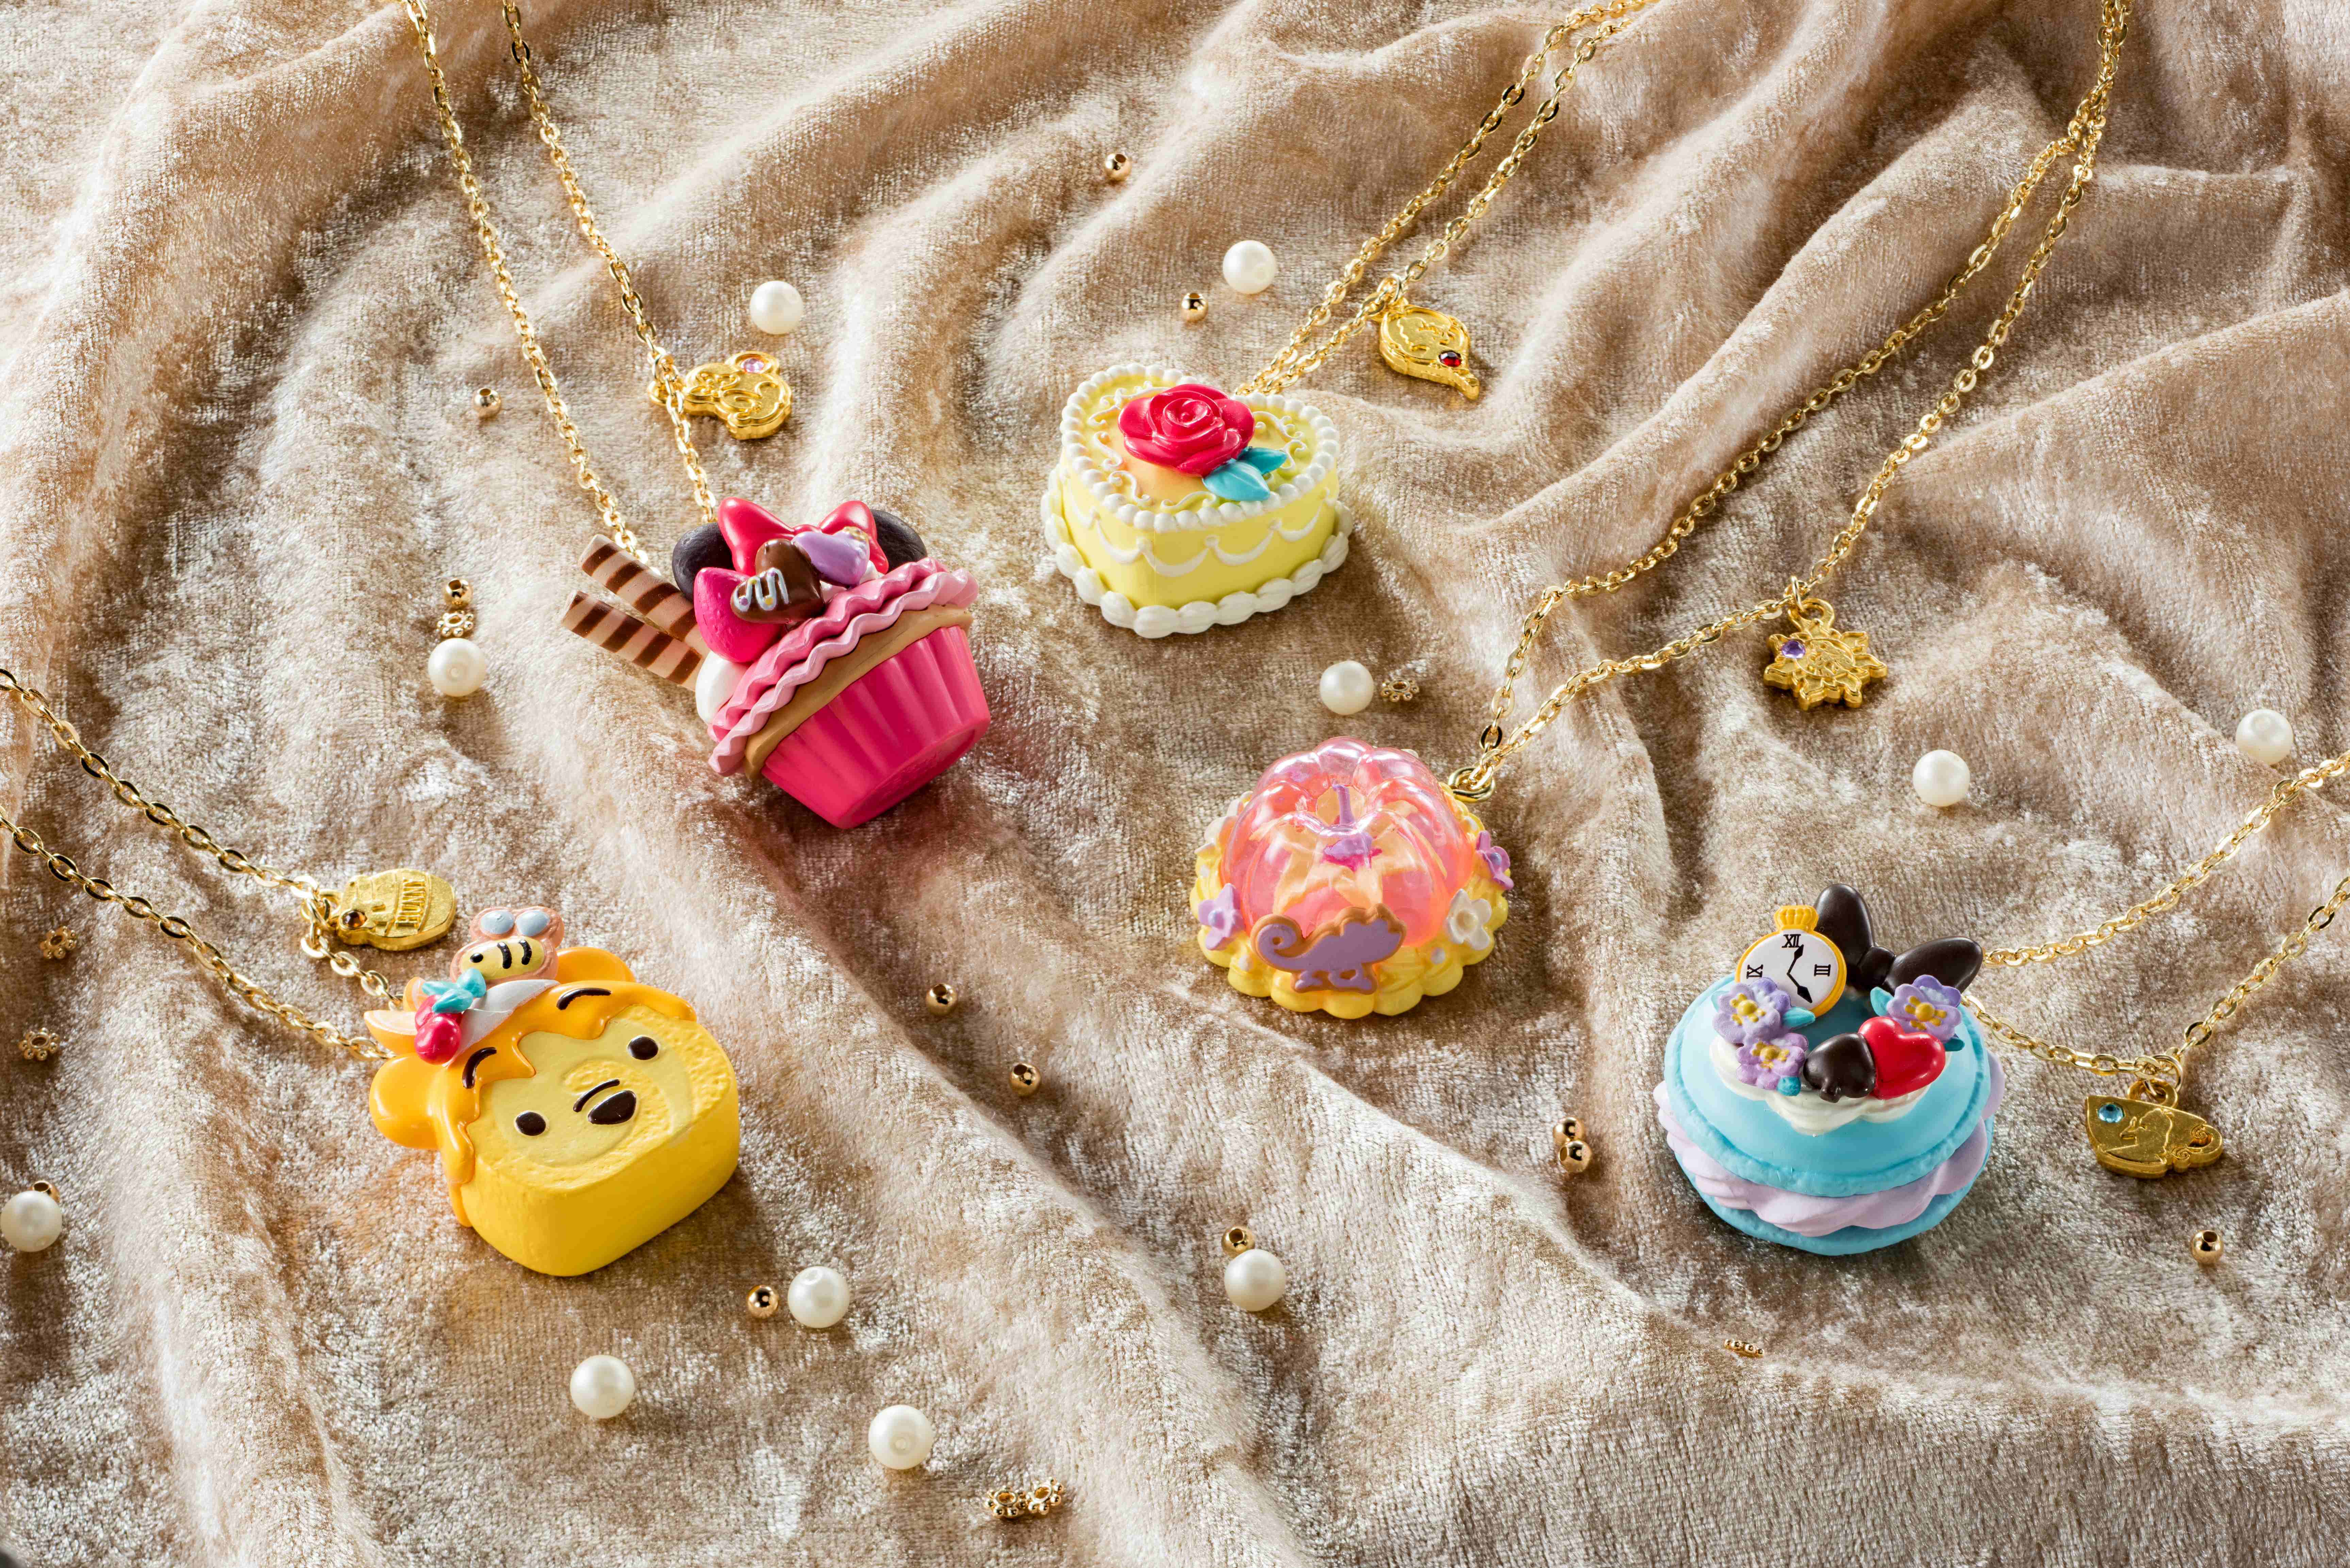 ミニーやプーさんなどディズニーキャラクターが スイーツ型ネックレス になってお菓子売場に登場 株式会社バンダイ キャンディ事業部のプレスリリース